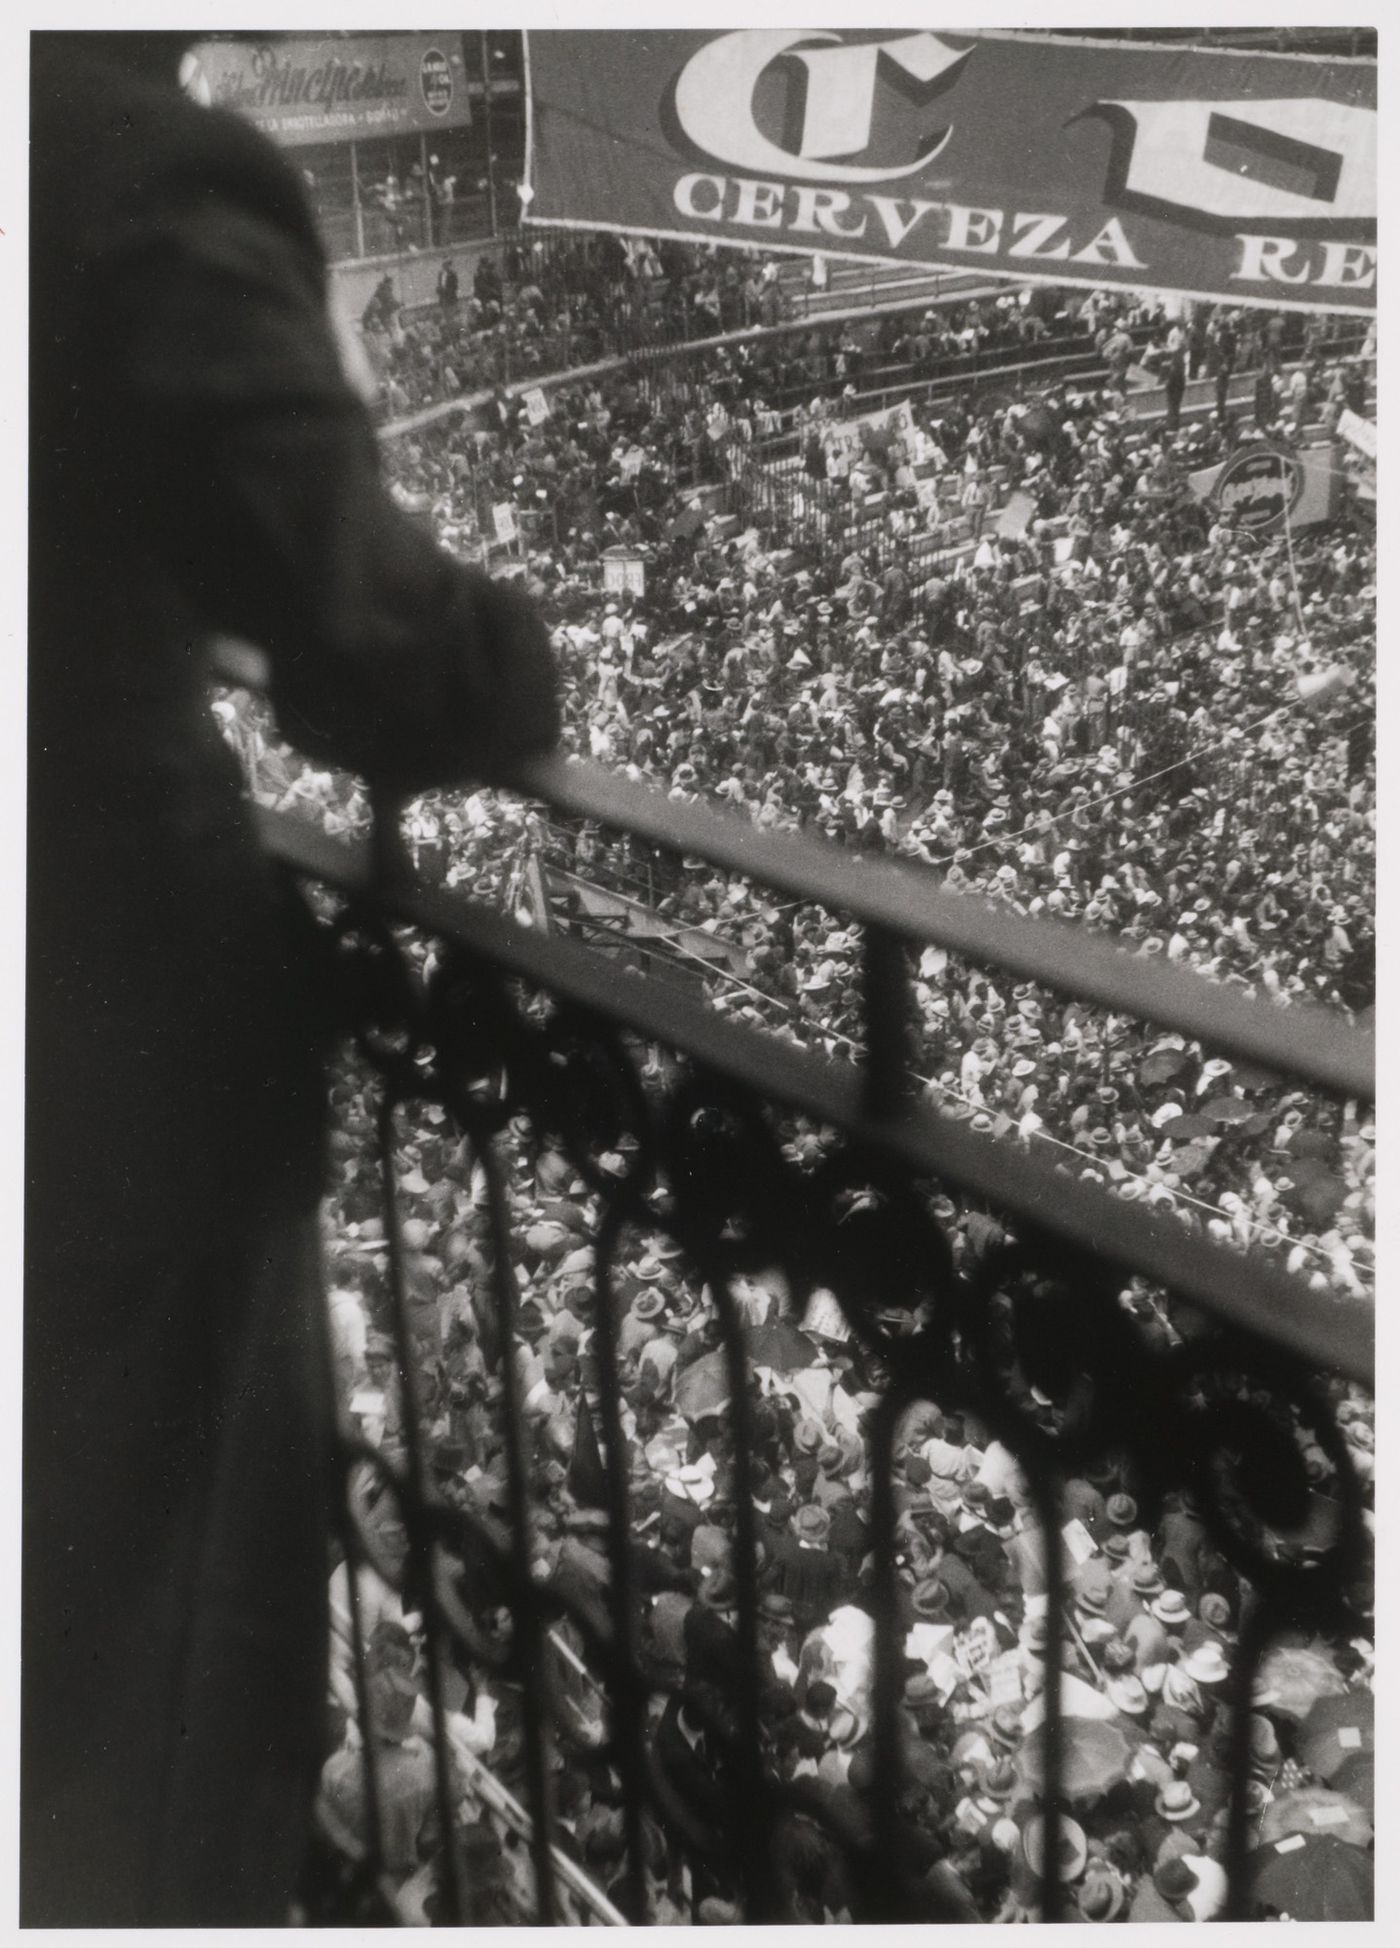 View of a crowd at the Arena de México, Mexico City, Mexico